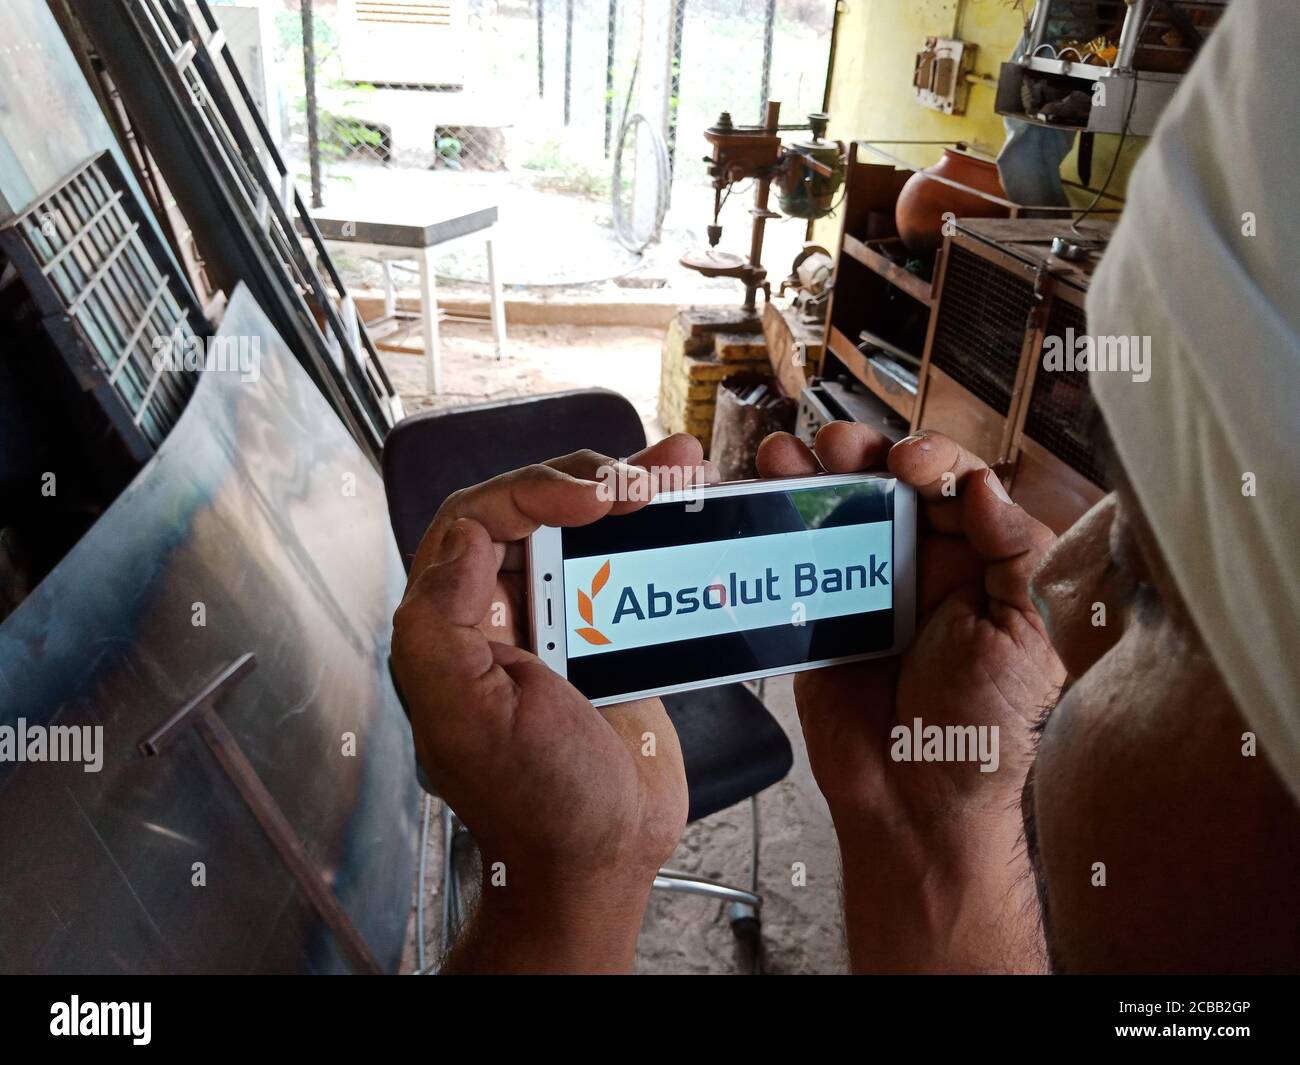 DISTRETTO KATNI, INDIA - 02 GIUGNO 2020: Un ragazzo indiano che detiene smartphone con visualizzazione del logo Absolut Bank sullo schermo, istruzione bancaria russa moderna Foto Stock